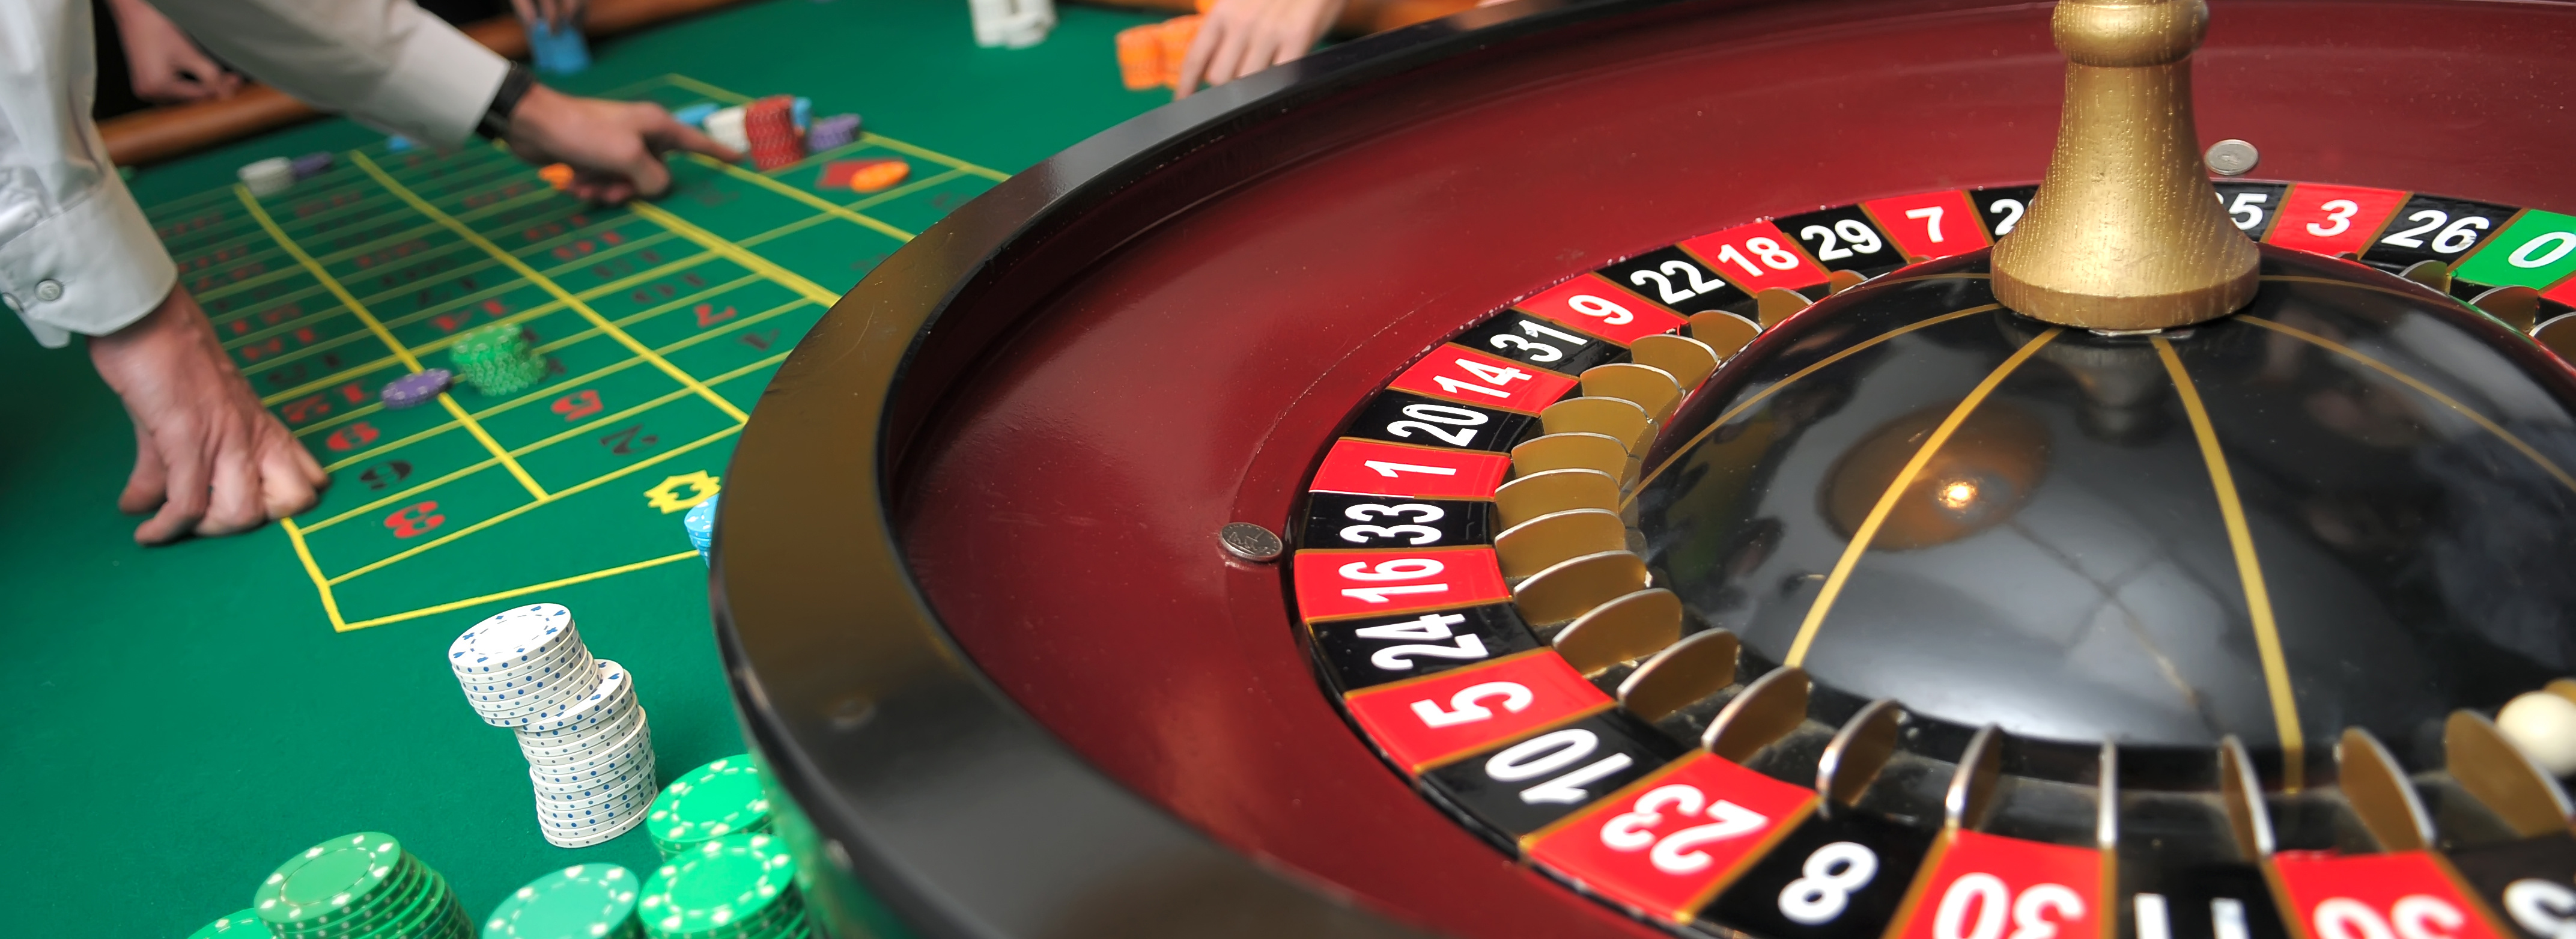 jeu de roulette casino terrestre